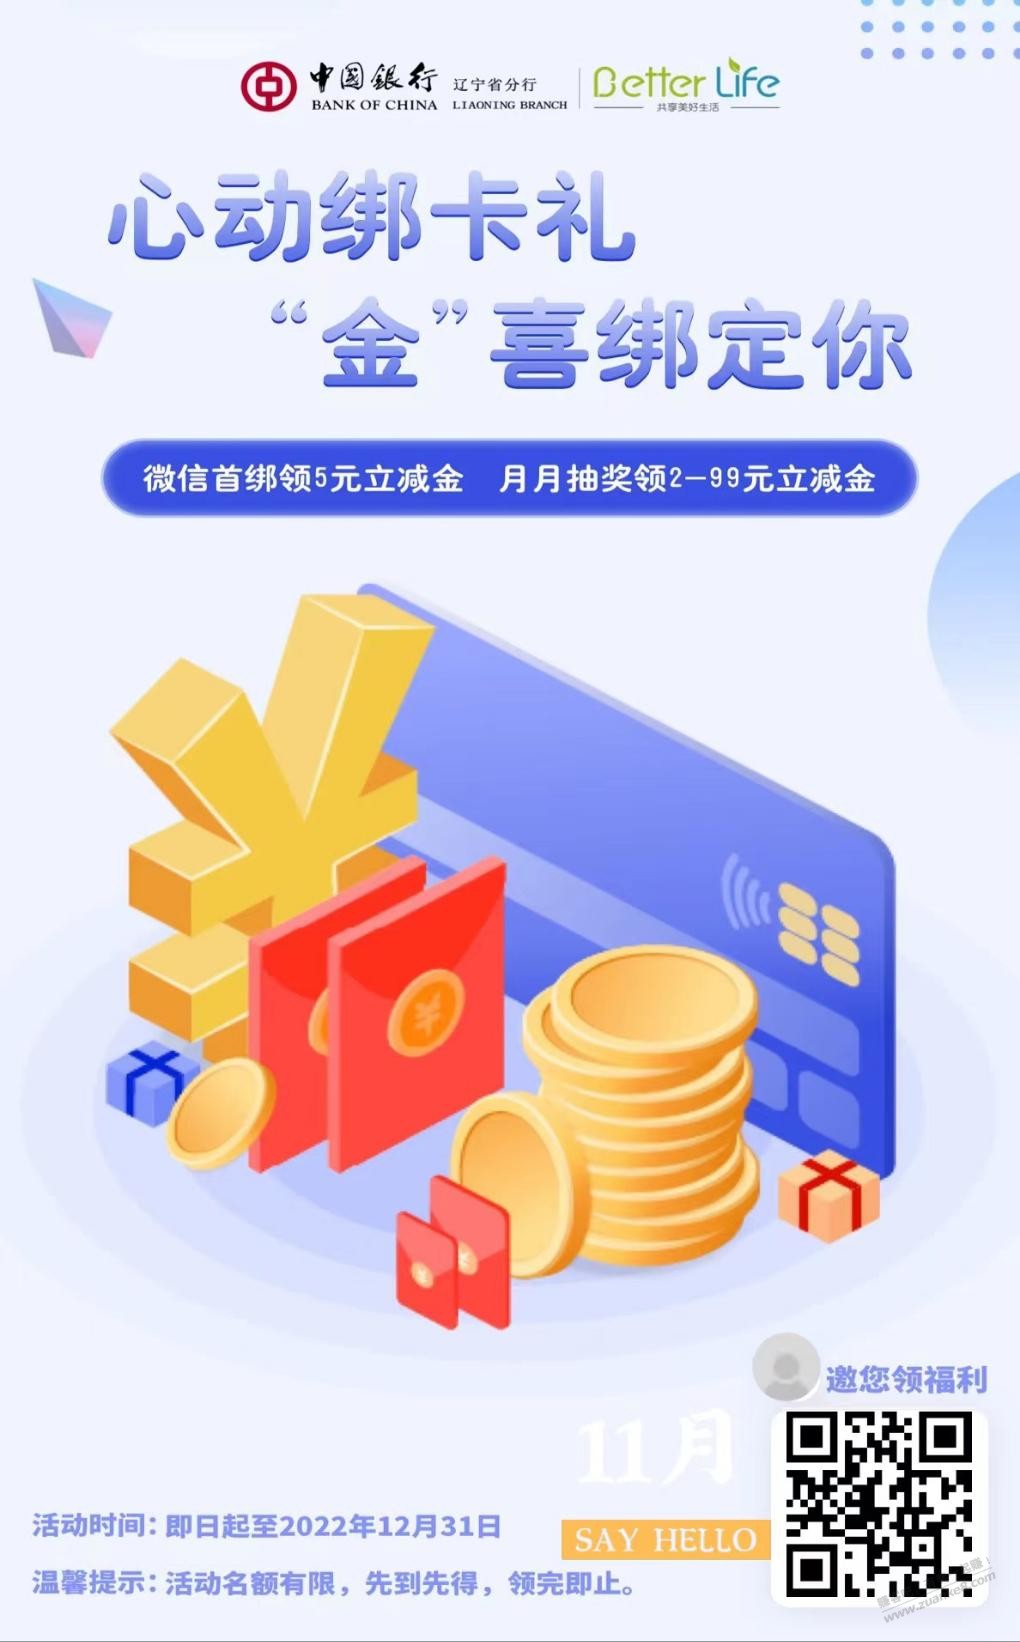 中国银行储蓄卡V.x立减金活动。-惠小助(52huixz.com)